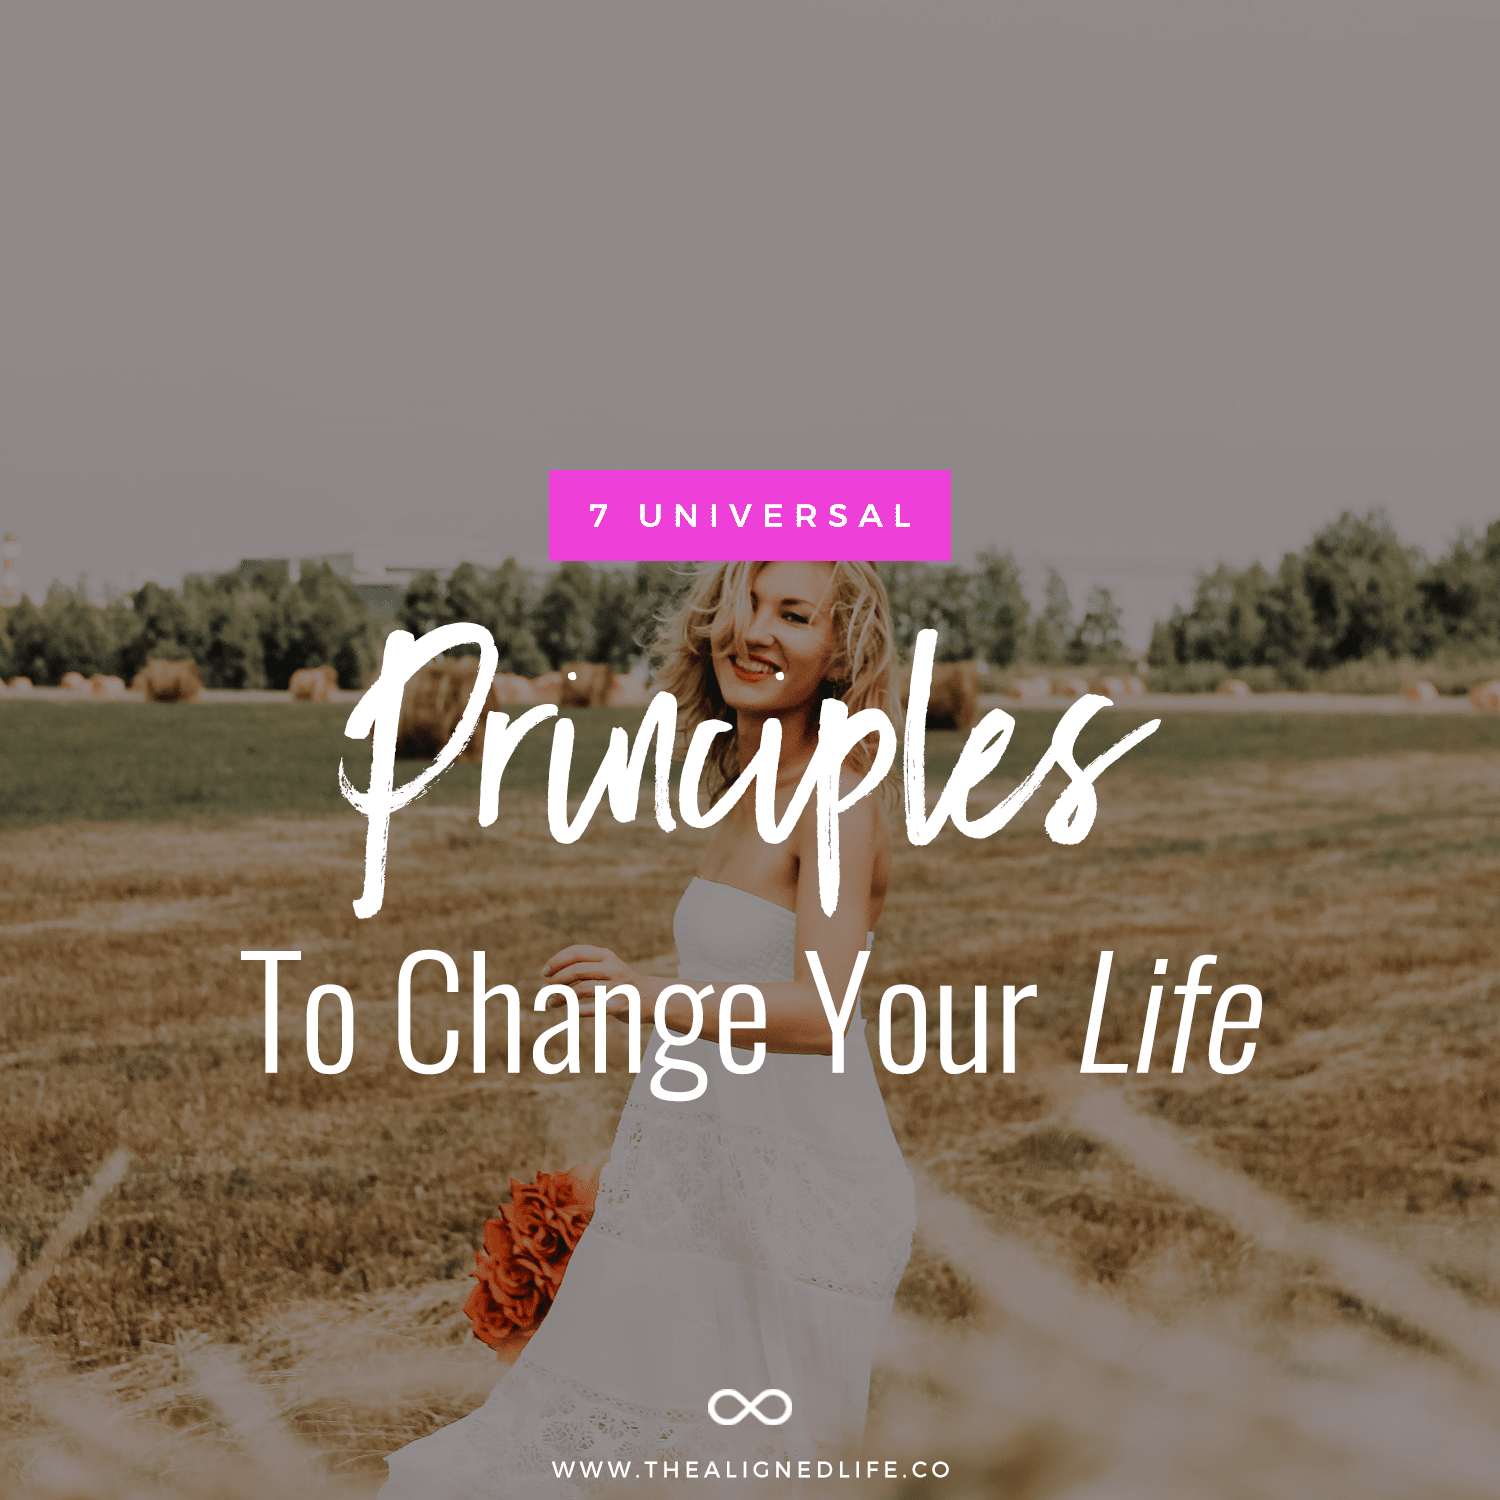 7 Universal Principles To Change Your Life